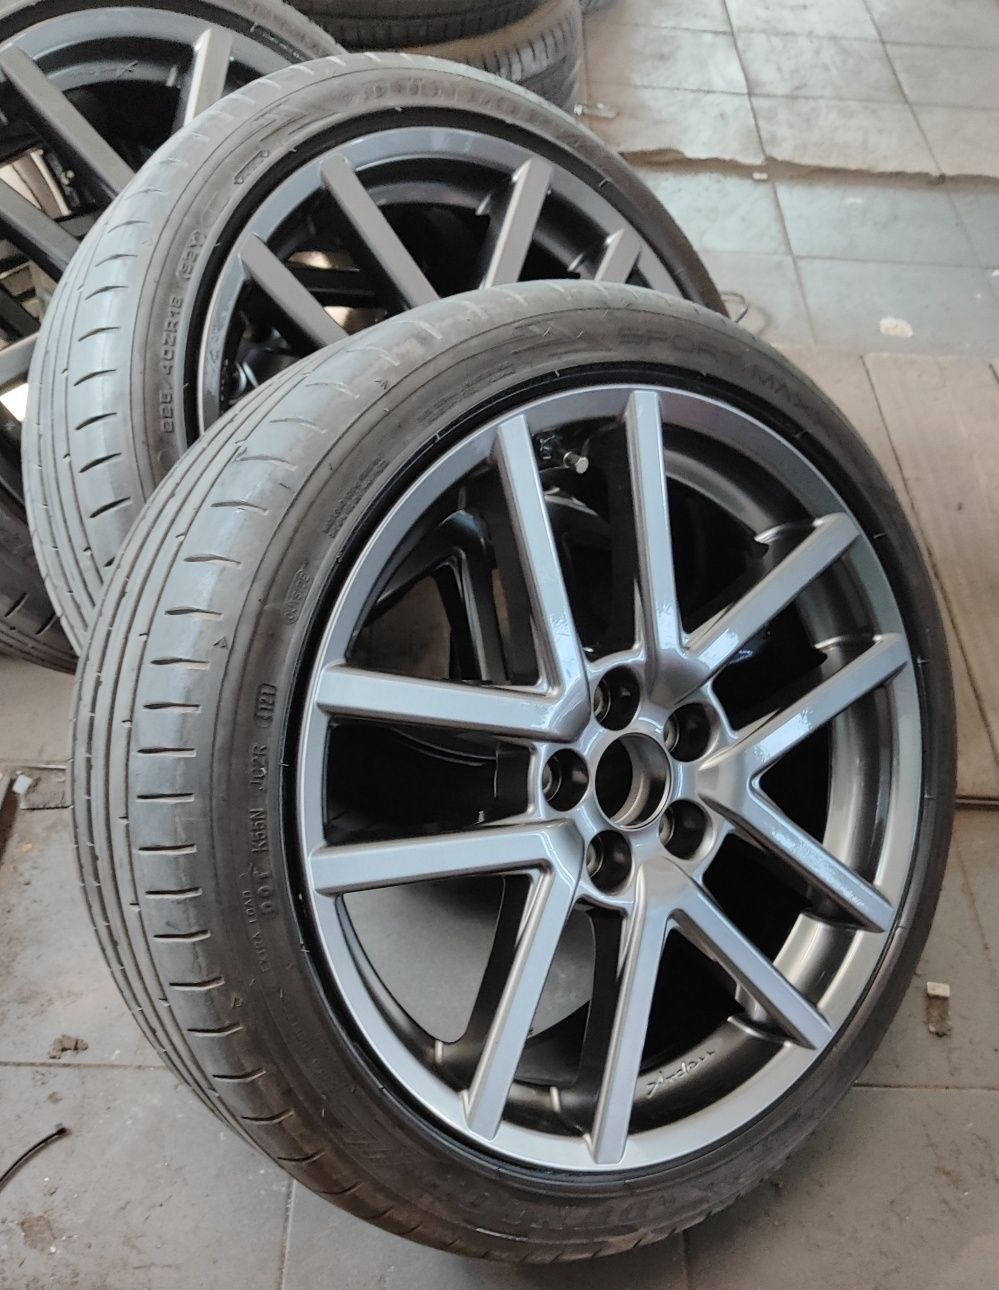 Felgi aluminiowe OZ Arden, 18', 5x108, 8j, et46 jak nowe- ford, jaguar